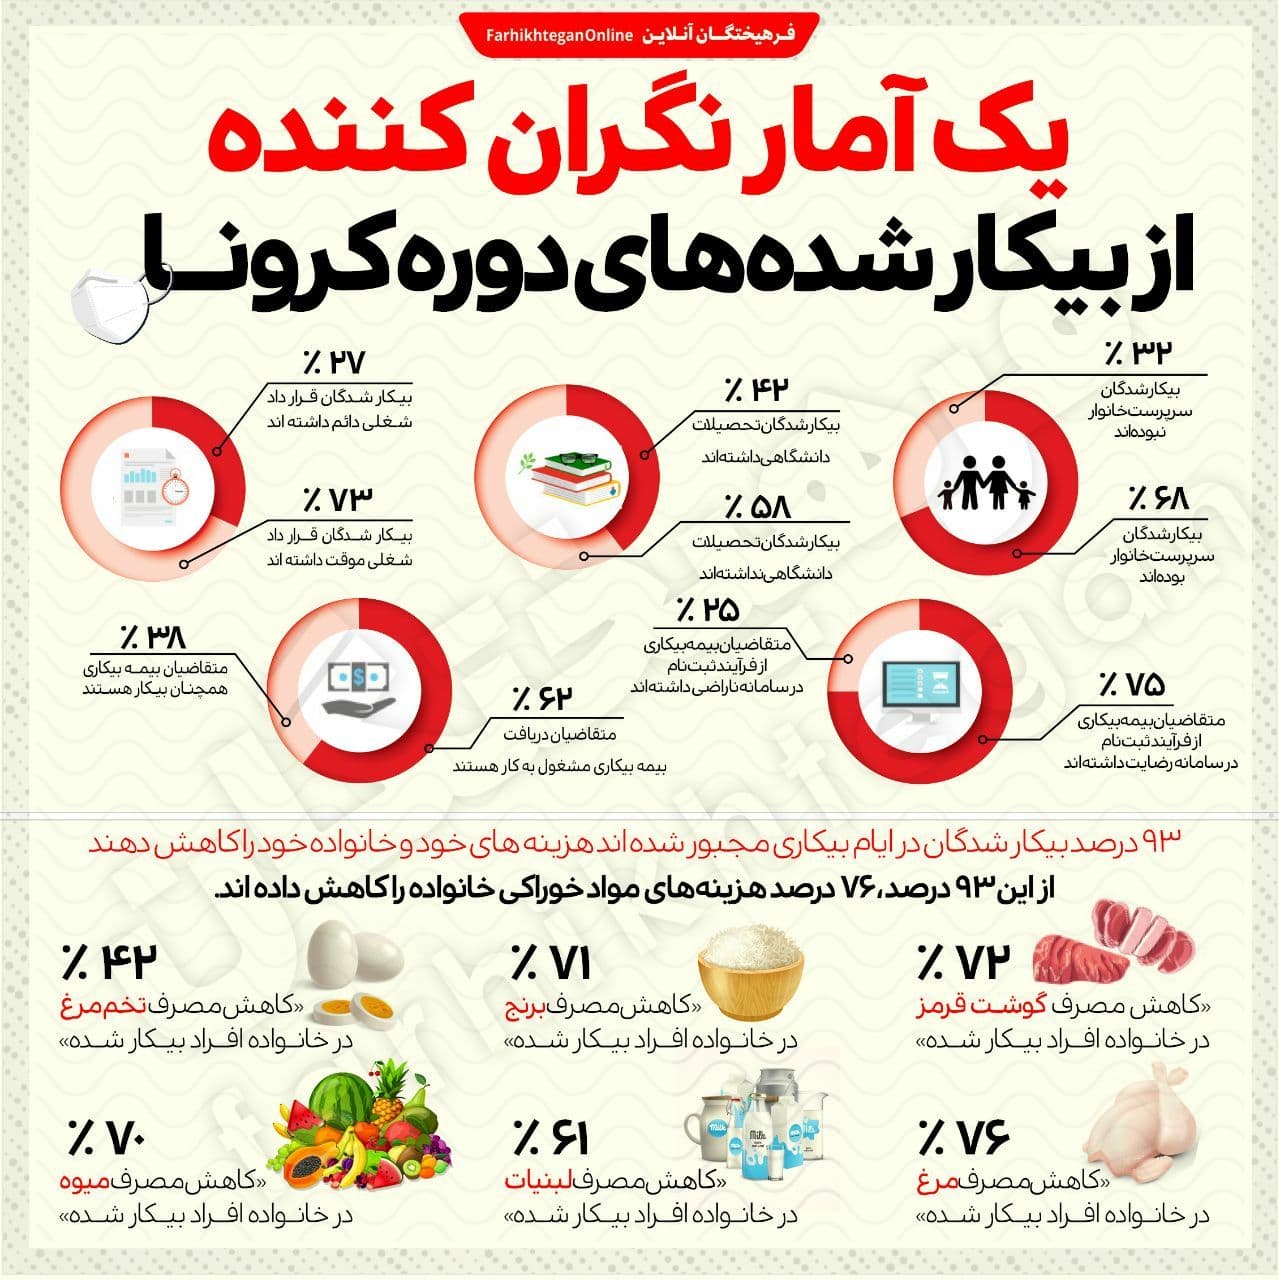 آمار باورنکردنی از بیکار شده های کرونا در ایران+عکس